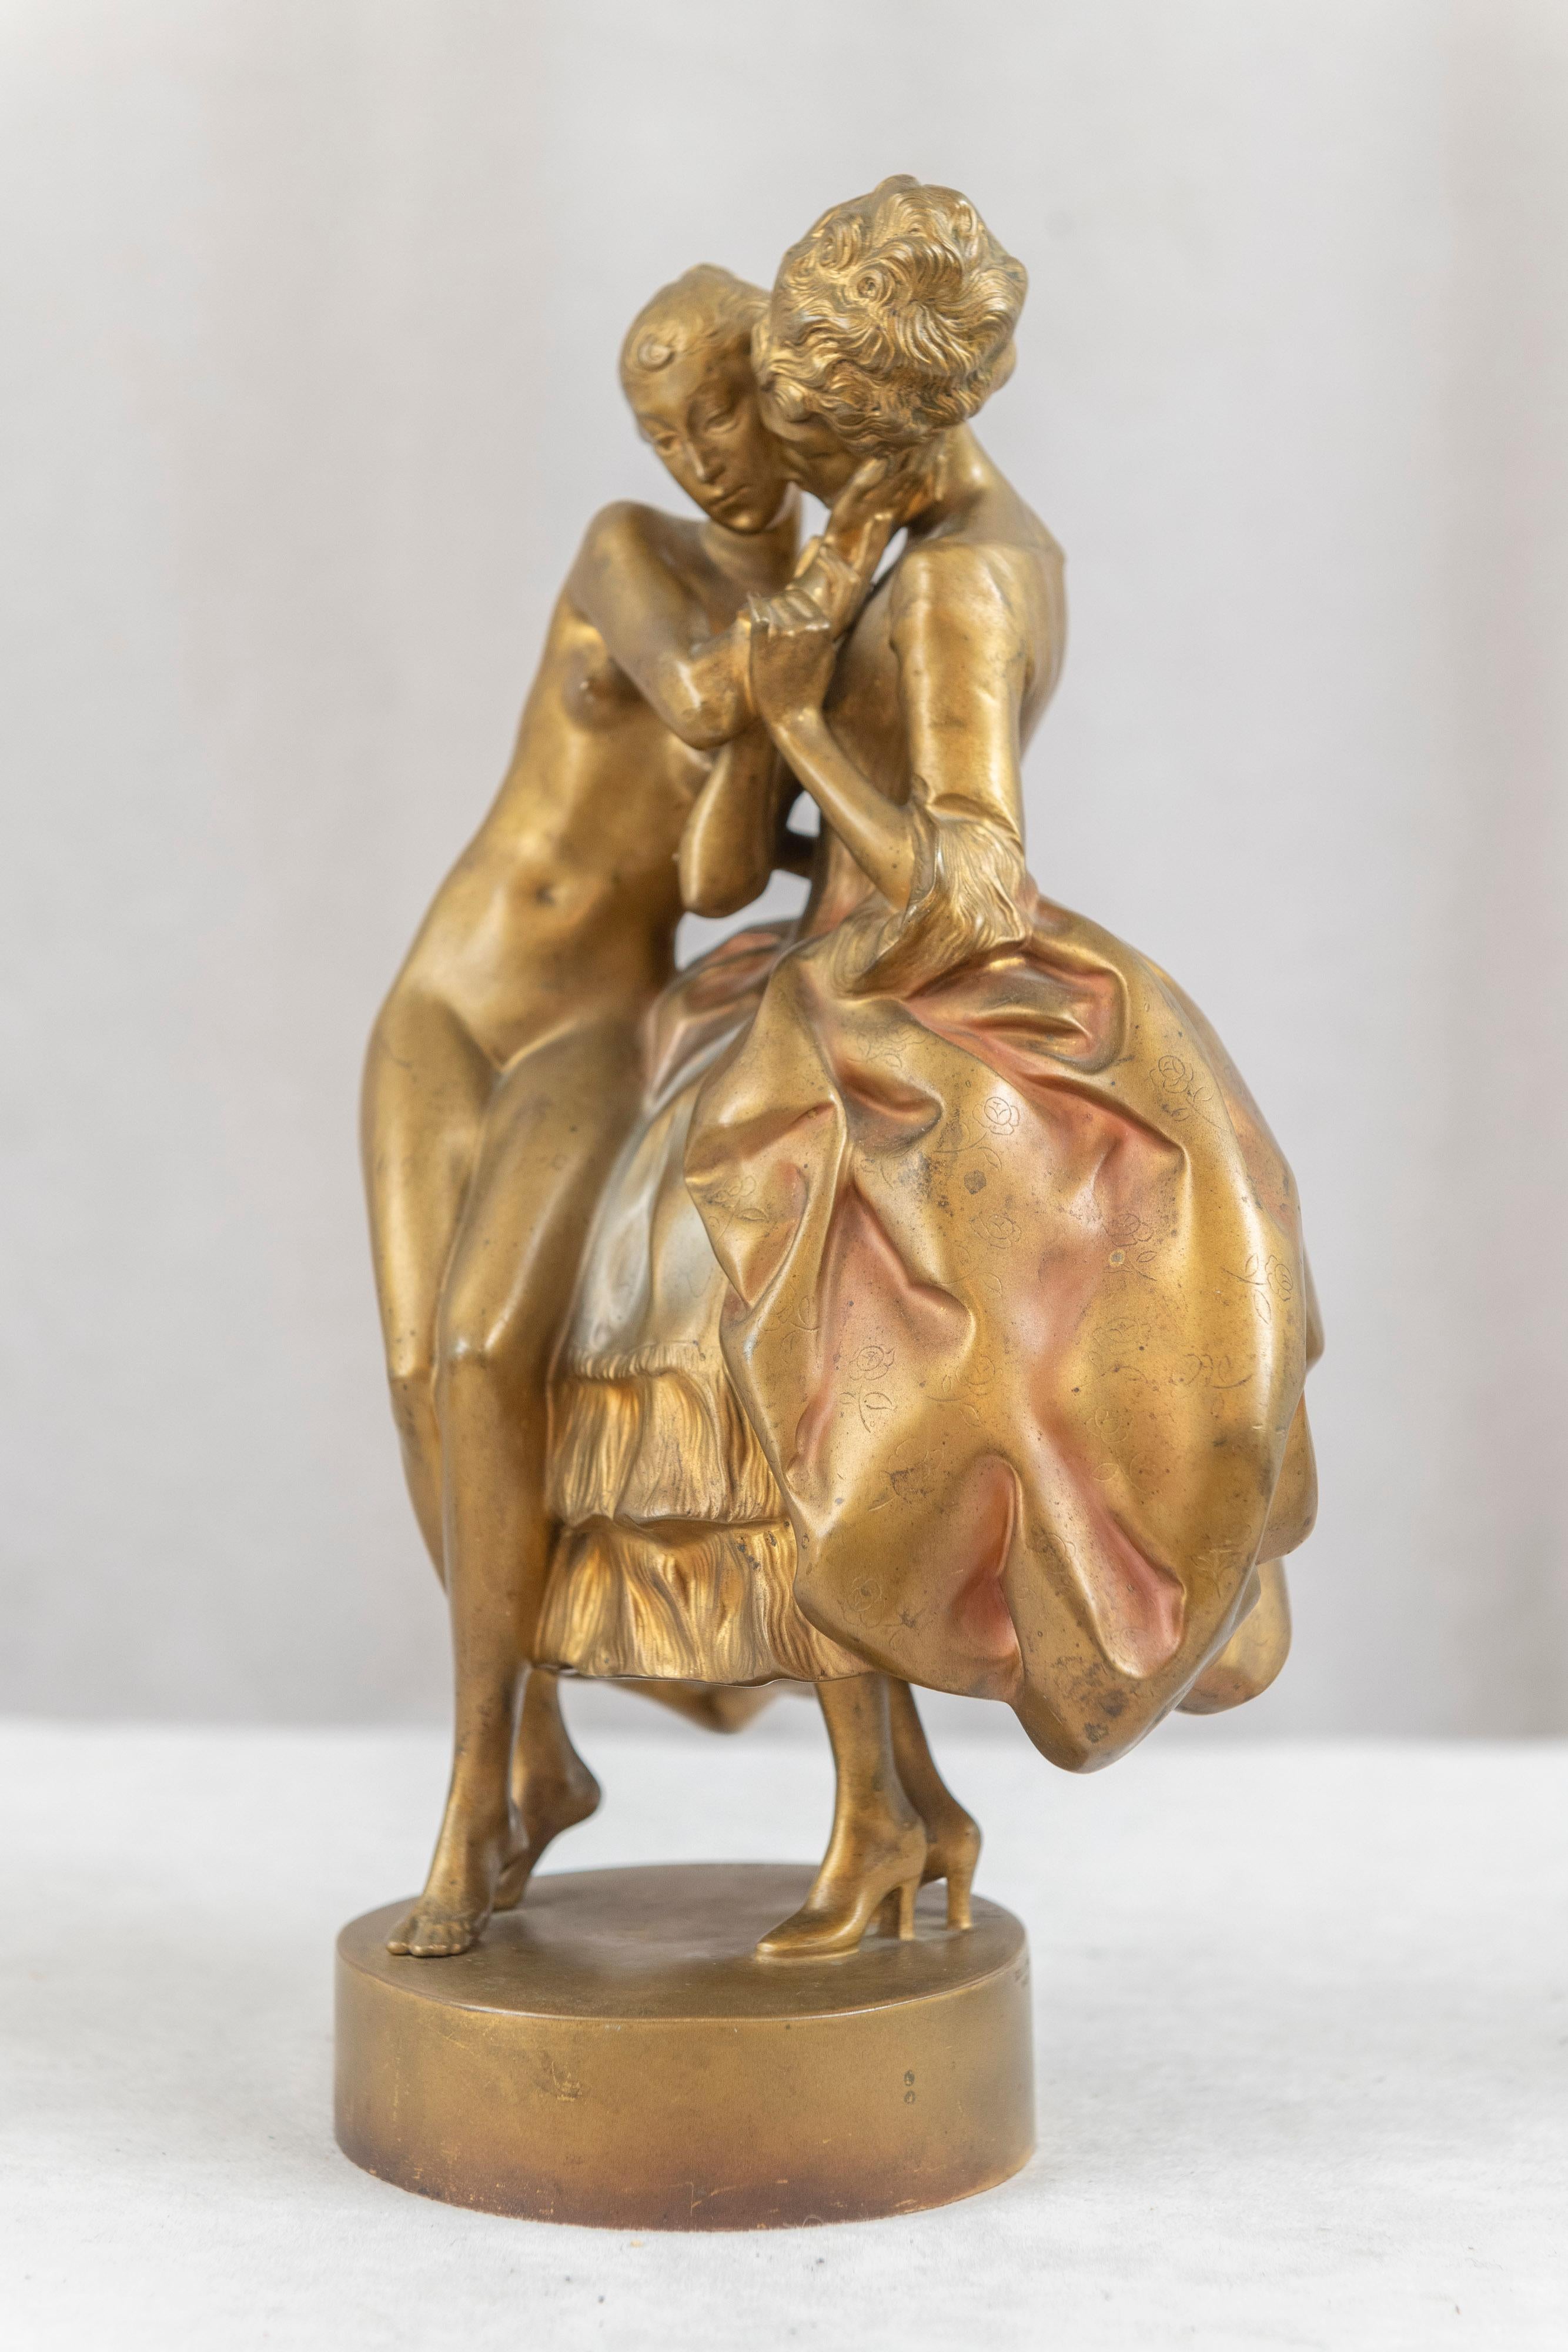  Ce magnifique bronze, chaleureux et affectueux, représente deux femmes qui s'embrassent. L'une est habillée de façon très formelle et pimpante, tandis que sa partenaire est nue. Le style et surtout les visages sont purement art déco. Le bronze a